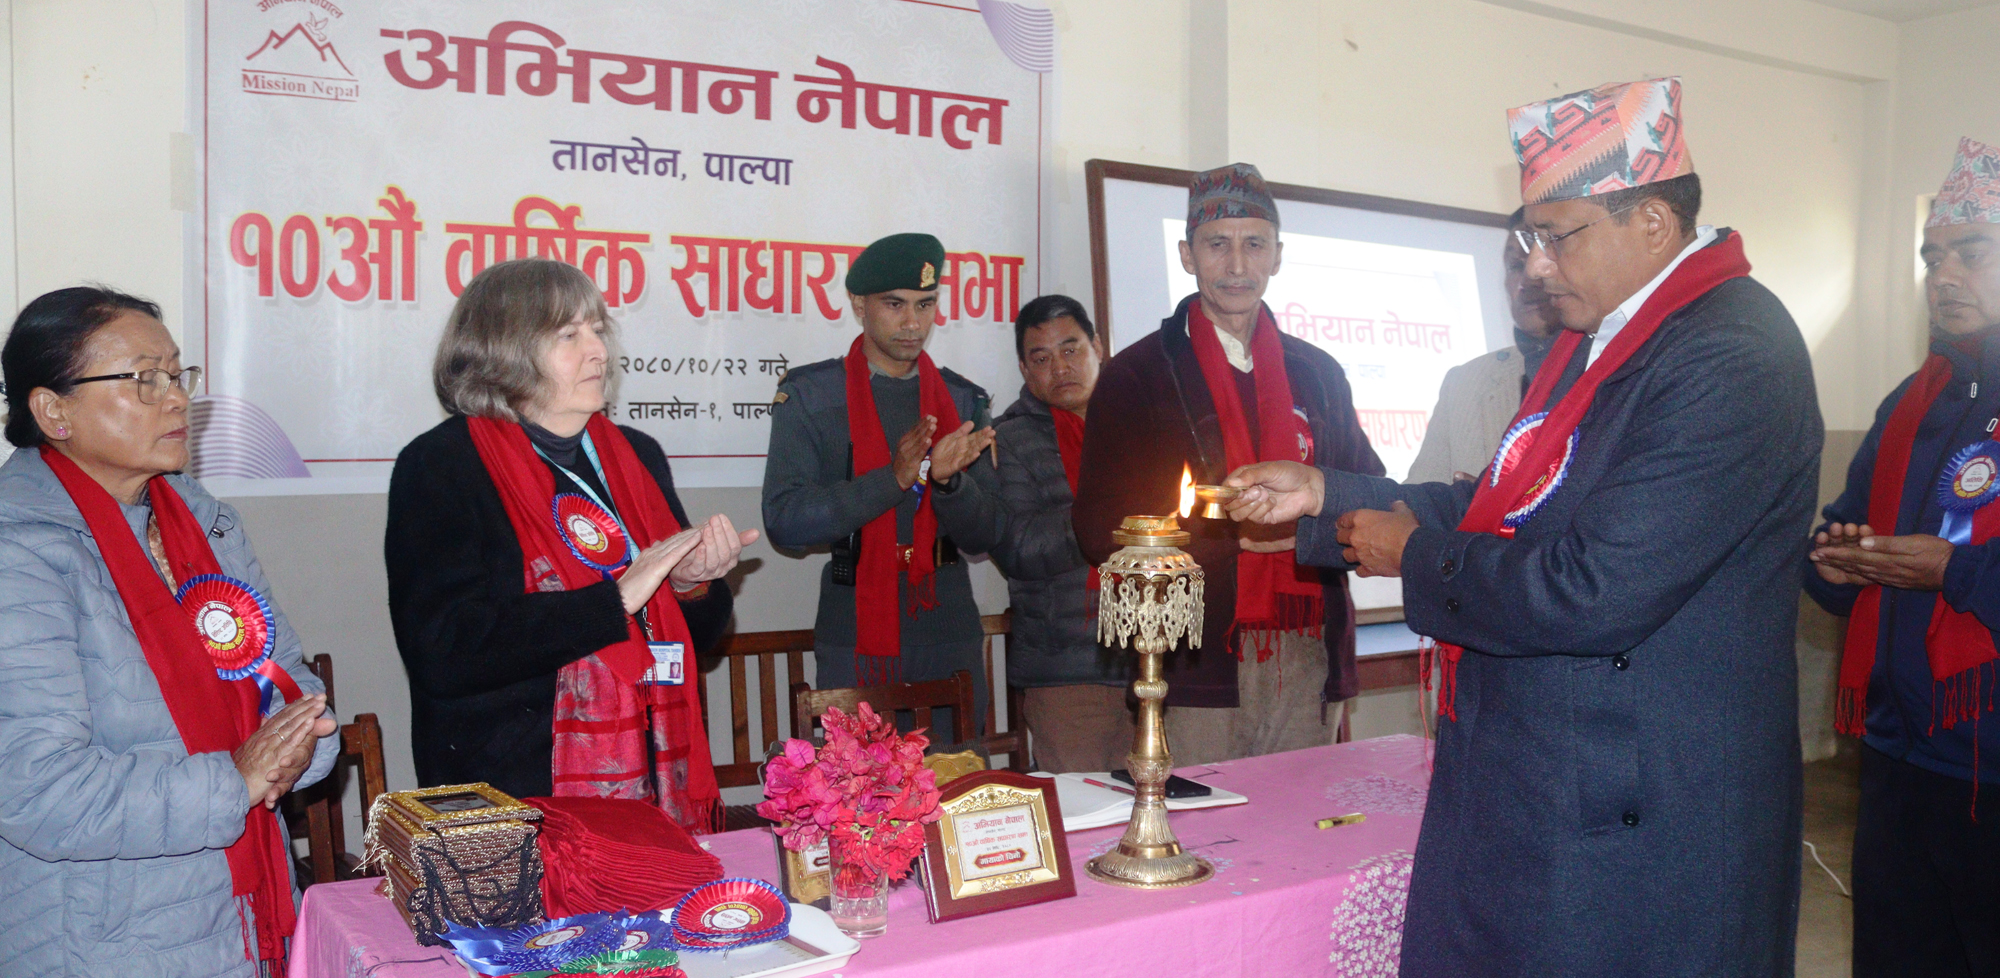 बेसहाराको सहारा बन्दै ‘अभियान नेपाल’